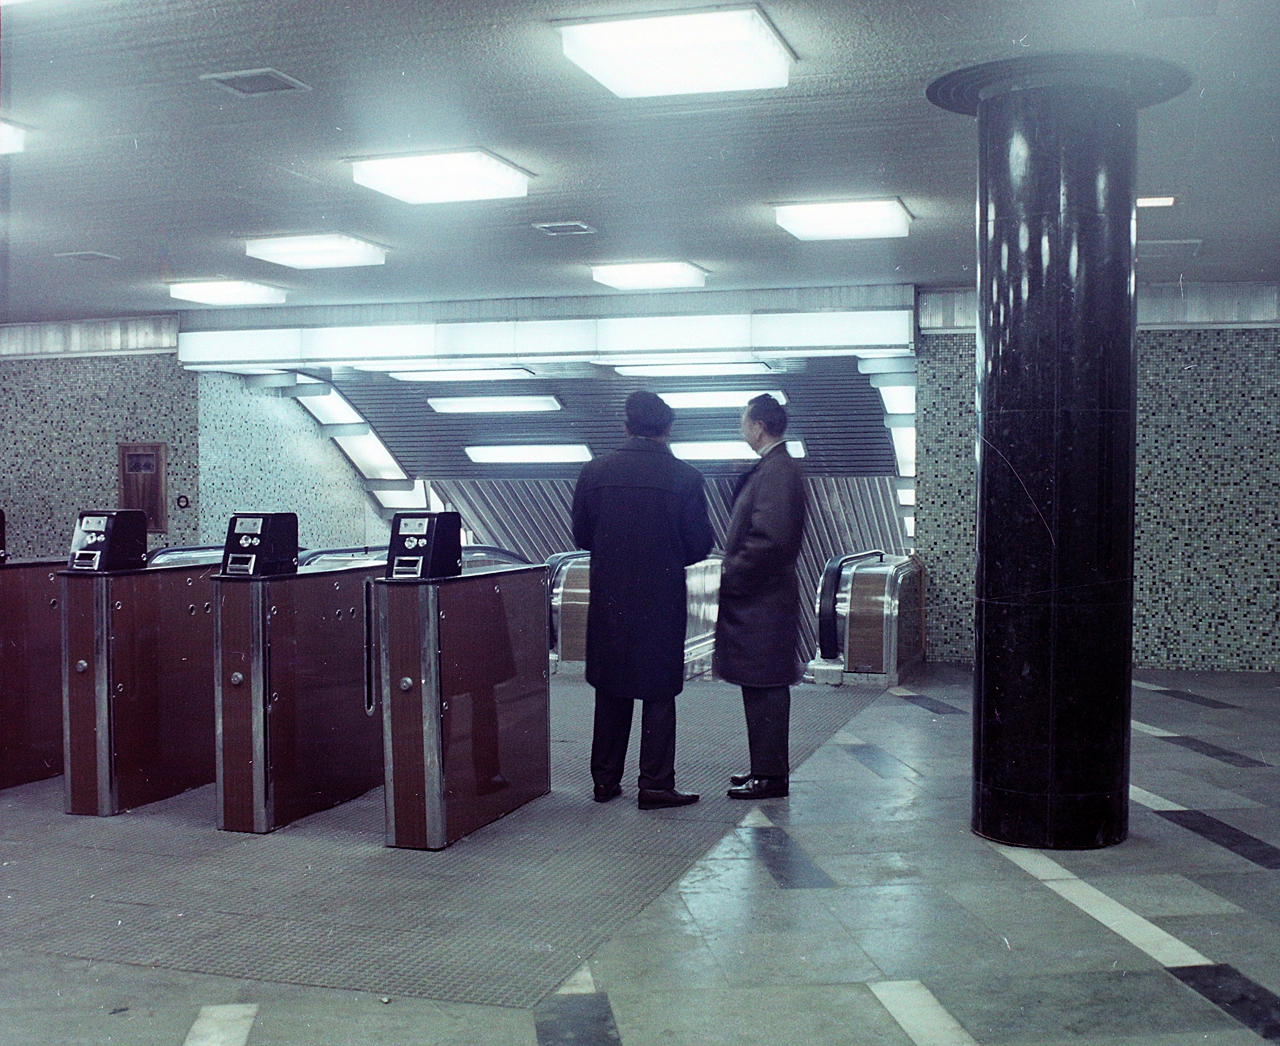 Beléptetőrendszer: így kezdődött a metrón, 1970-ben (forrás: Fortepan)